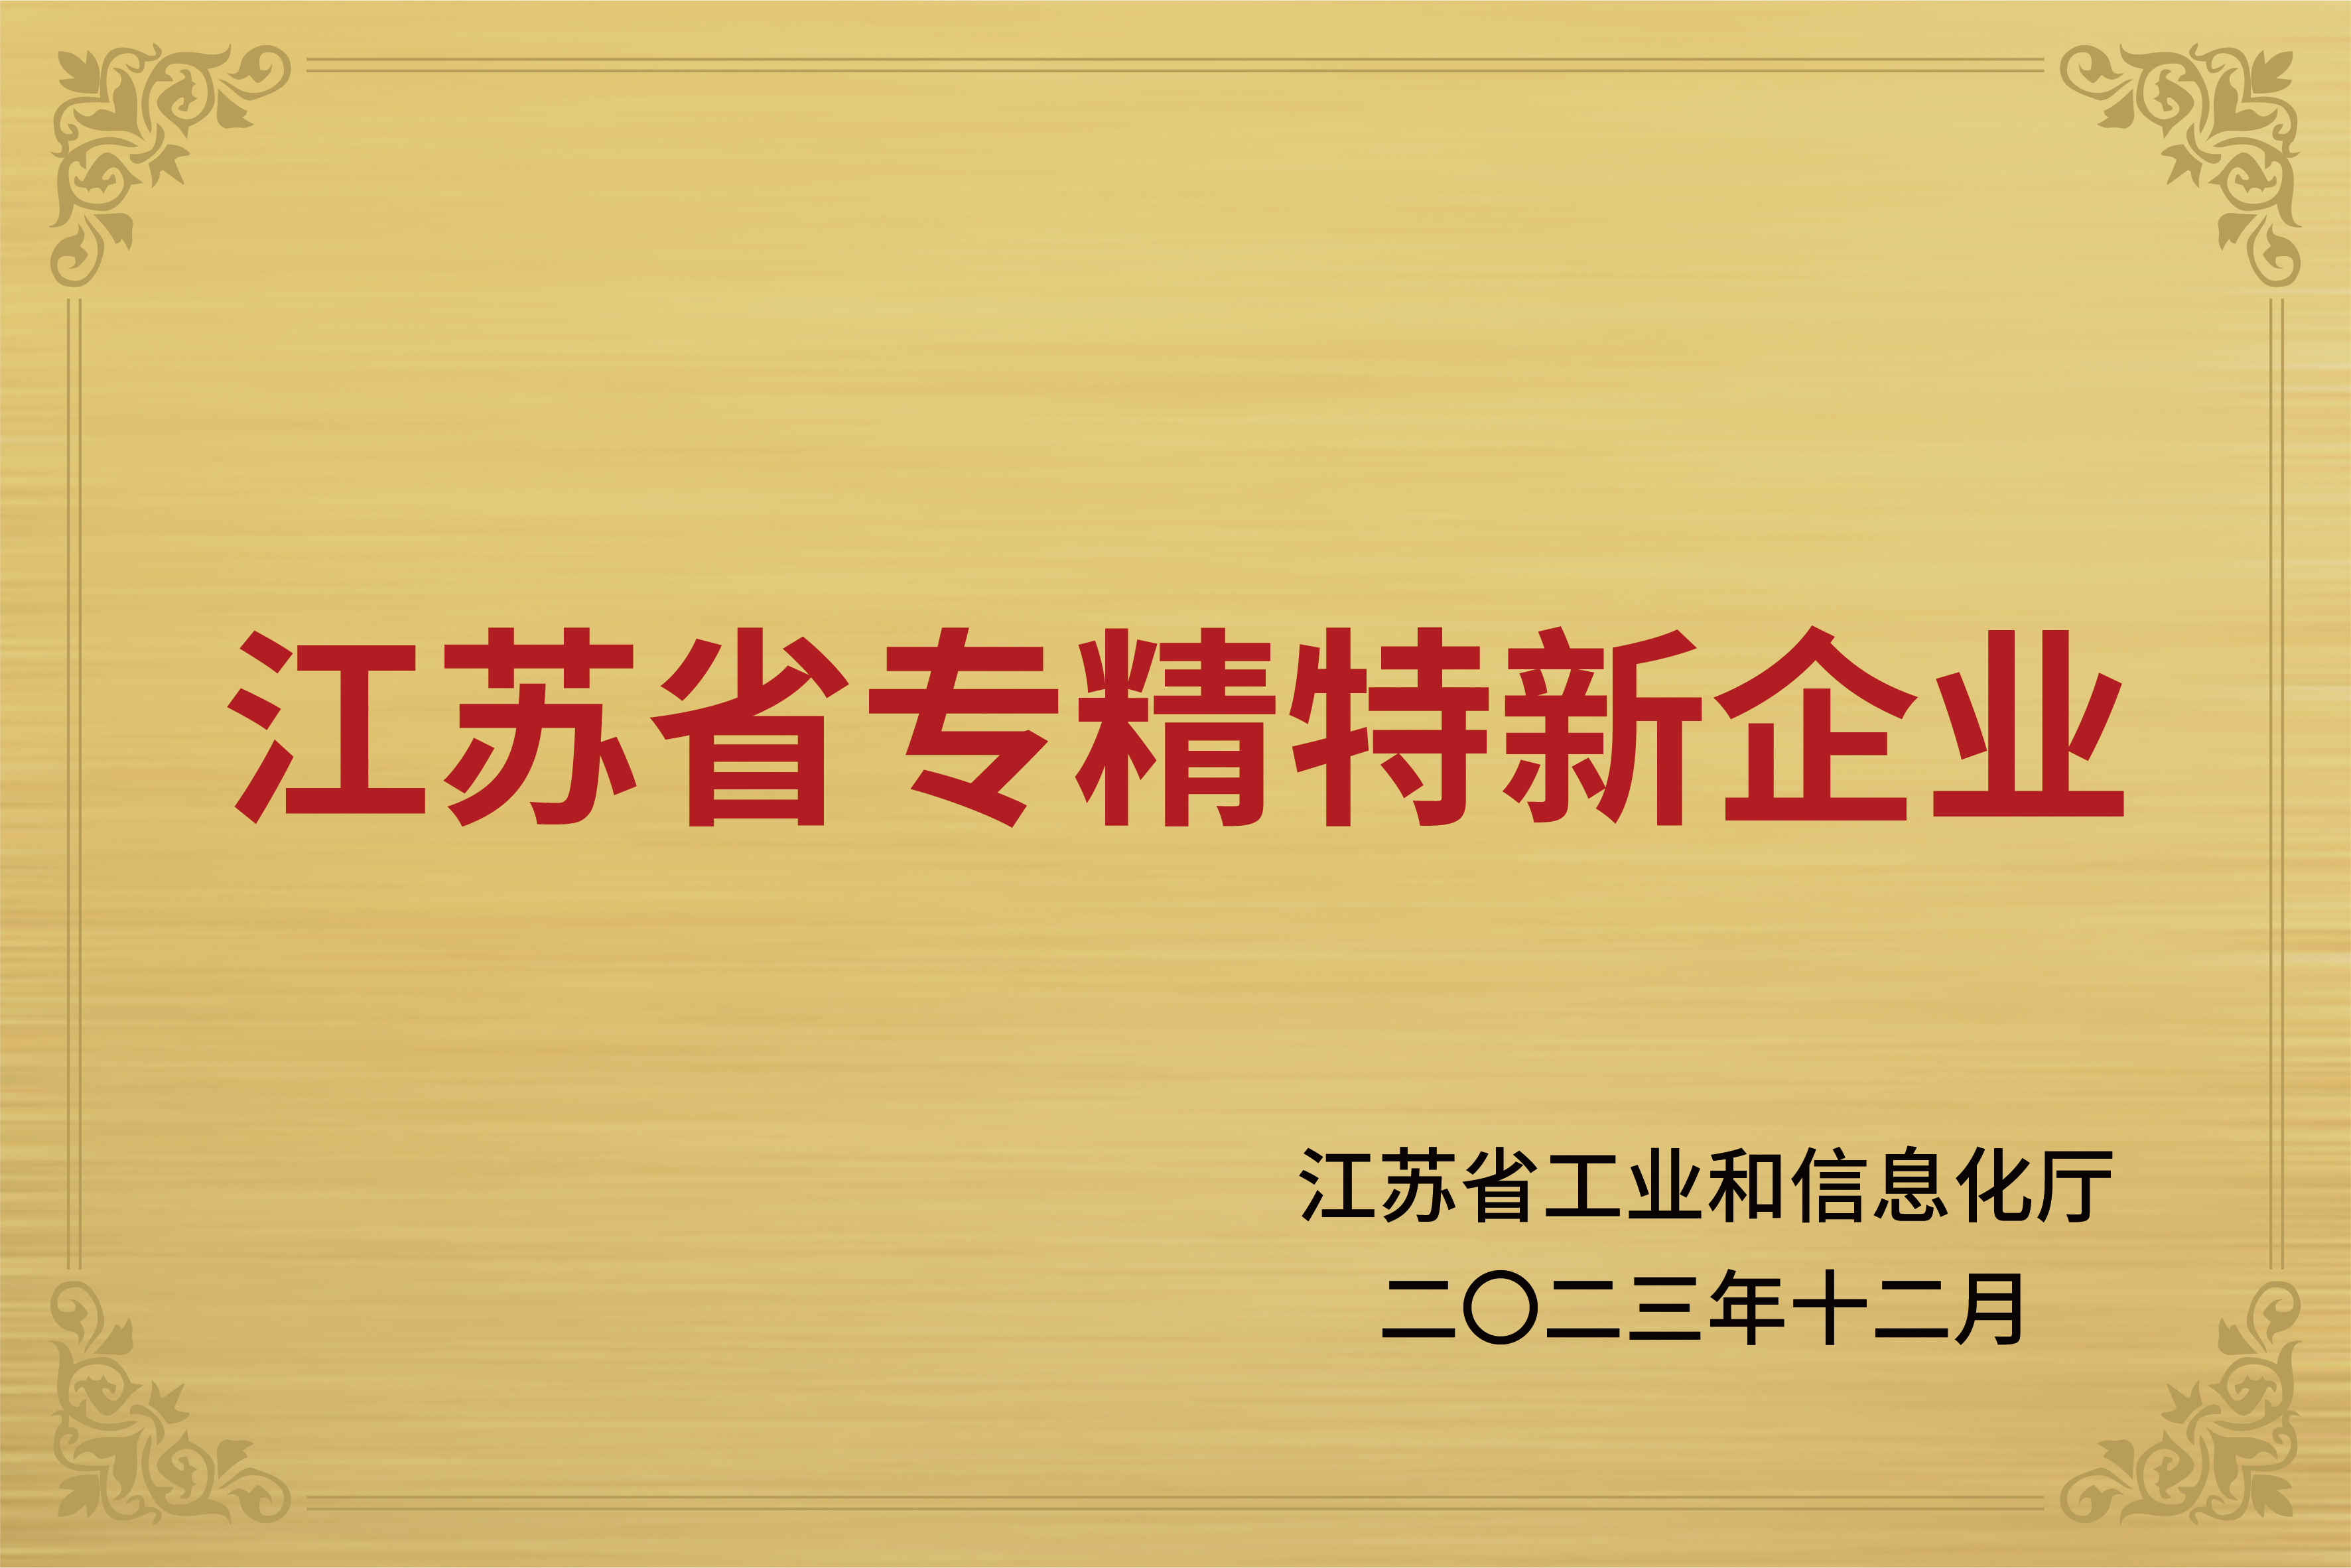 Lees Power a remporté le titre de "la province du Jiangsu spécialisée et spéciale nouvelle entreprise " "